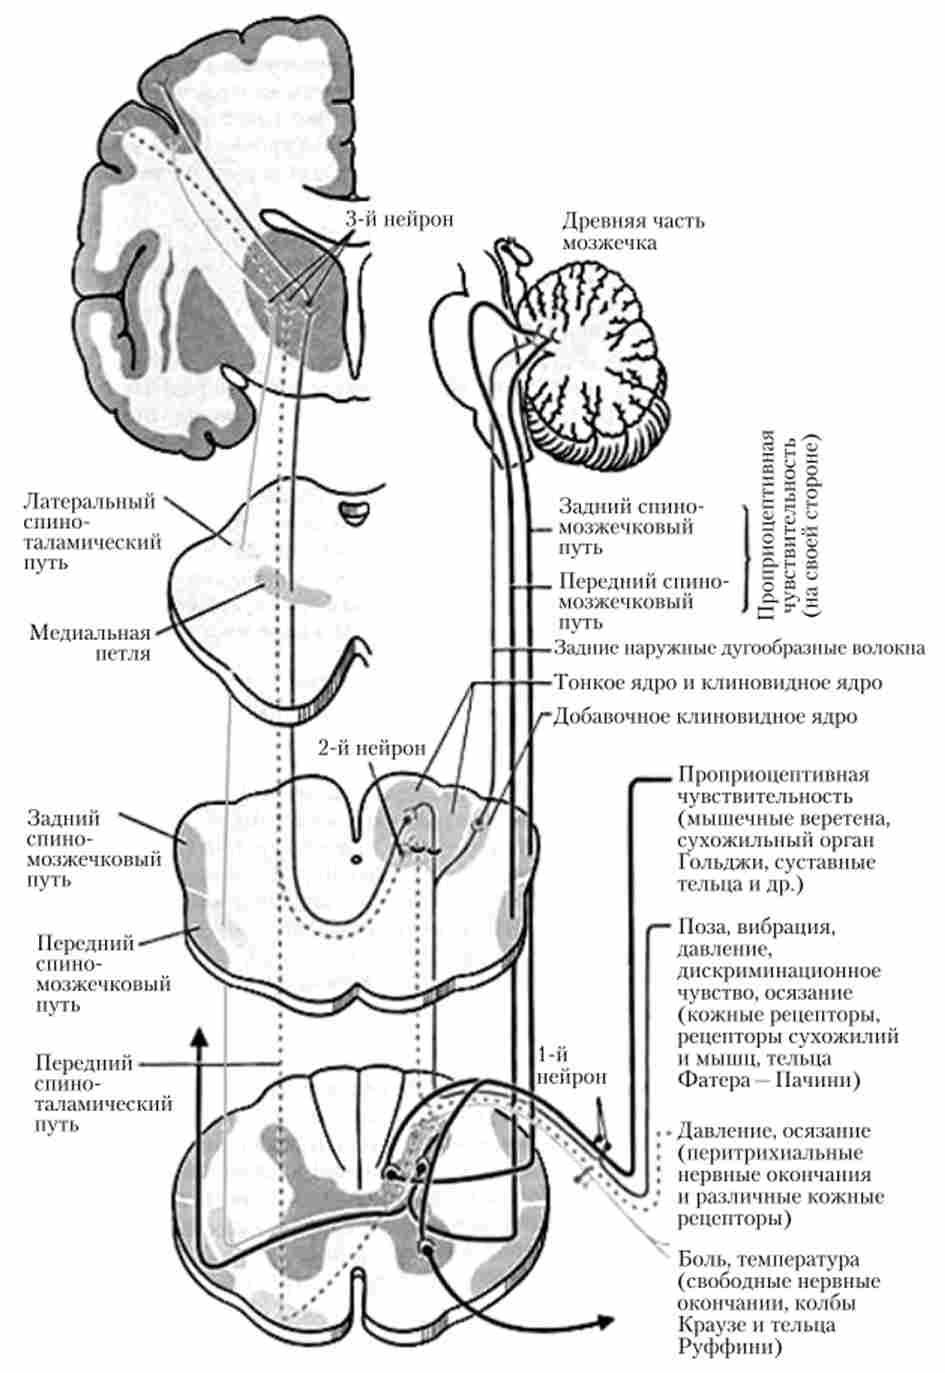 Схема проходження трехнейронной чутливих (висхідних) шляхів в спинному мозку і на різних рівнях